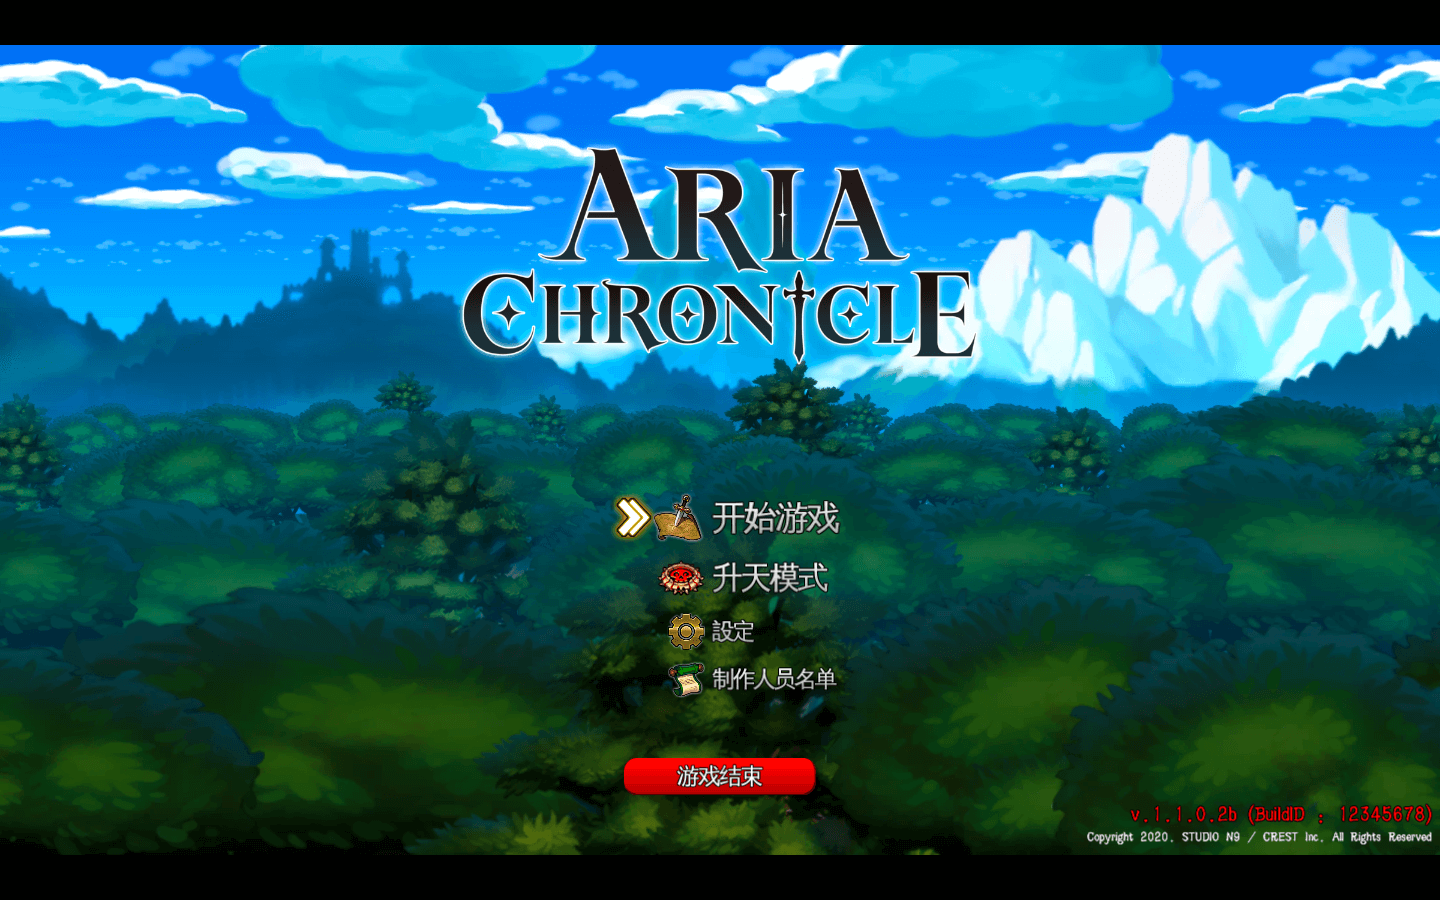 艾莉亚纪元战记豪华版 for Mac v1.2.1.1 ARIA CHRONICLE – Digital Deluxe Edition 中文移植版 苹果电脑